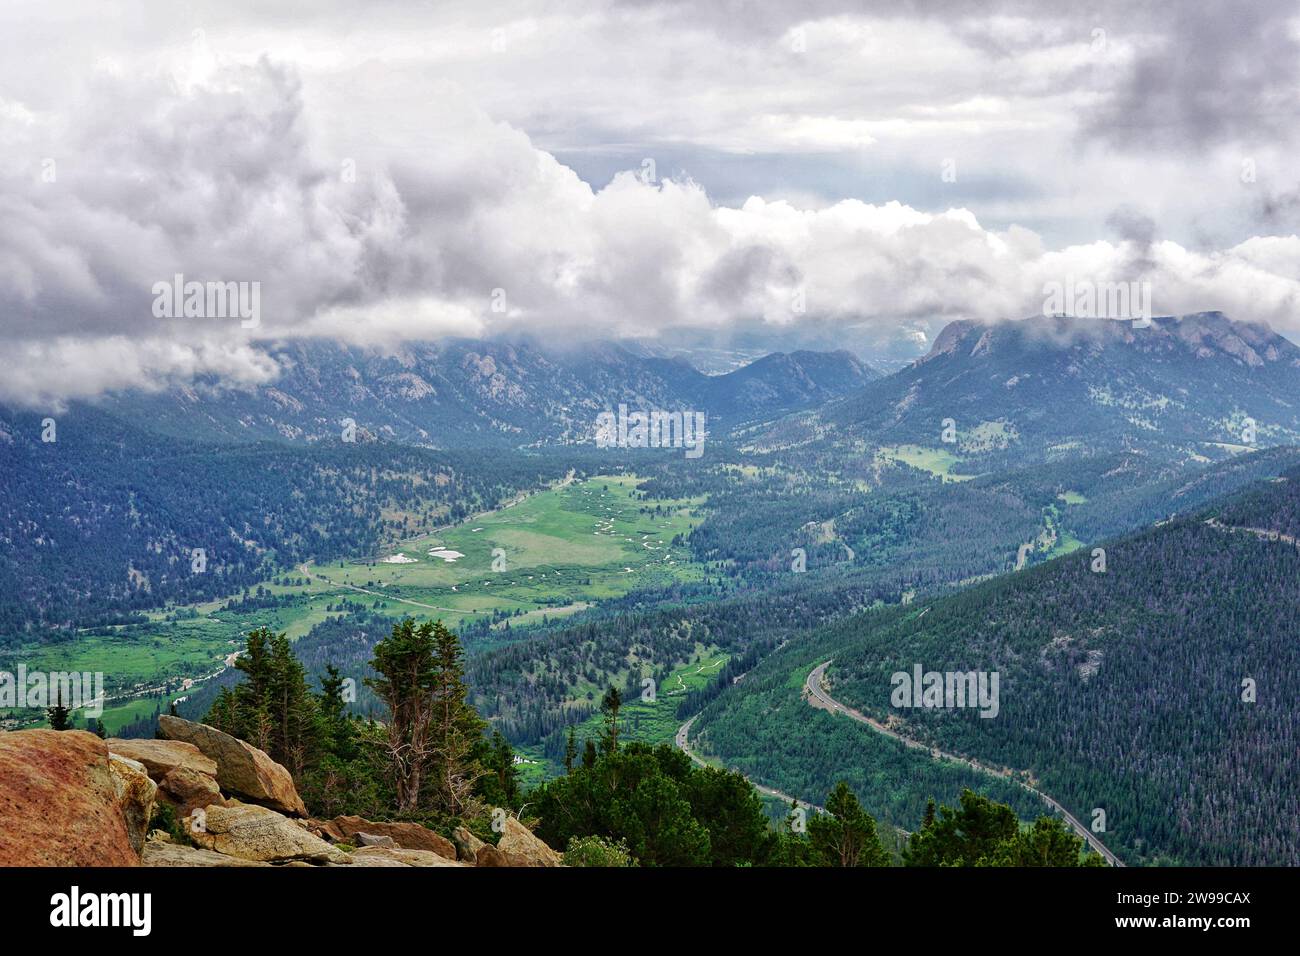 Ein Blick aus der Vogelperspektive auf ein Bergtal zeigt eine ruhige Landschaft, umgeben von üppigen grünen Hügeln und ein paar Bäumen an einem bewölkten Tag Stockfoto